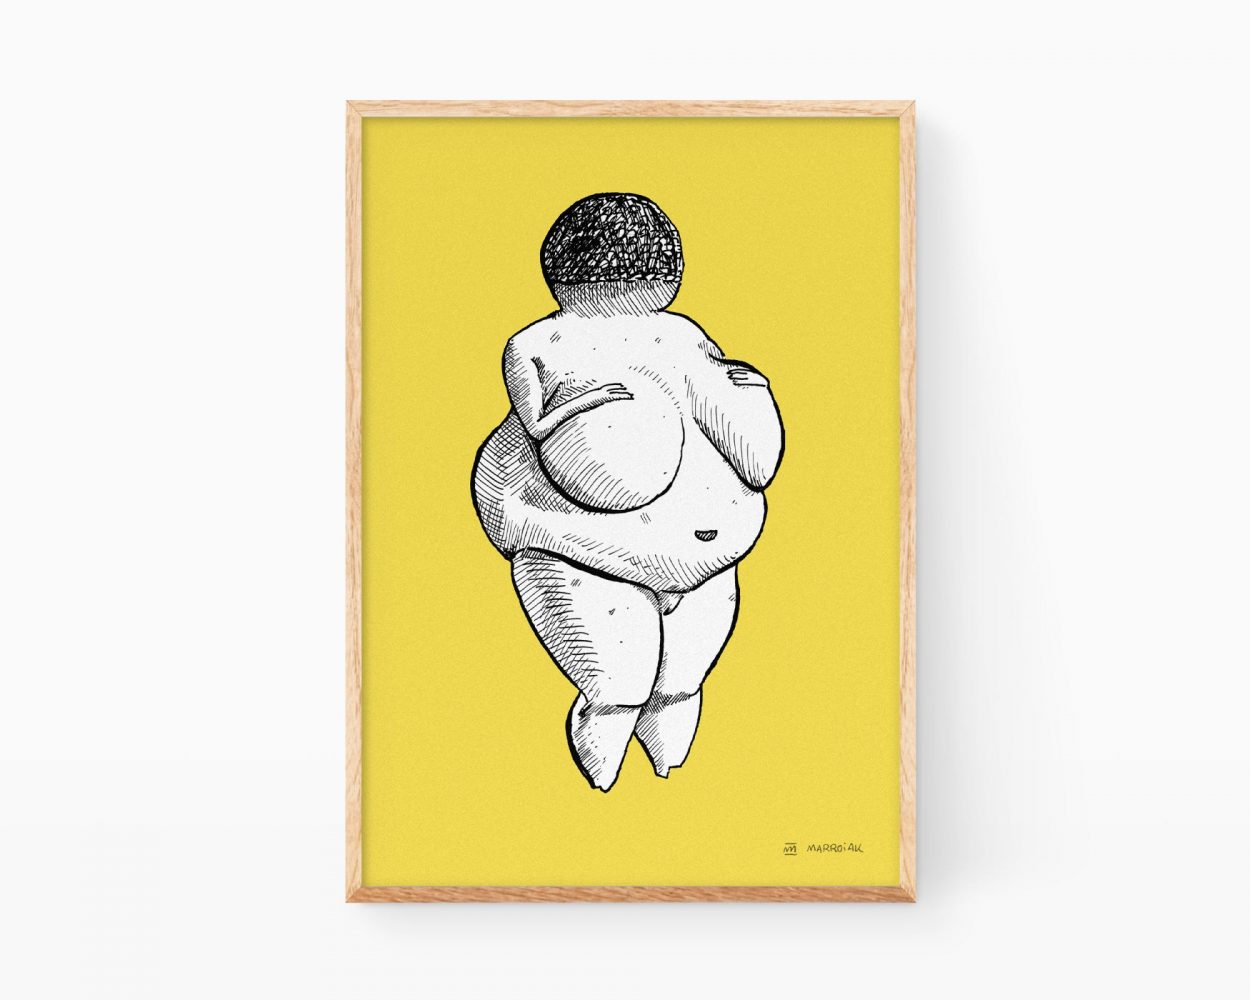 Lámina Venus de Willendorf amarillo. Cuadro decorativo para enmarcar con un dibujo en blanco y negro de la escultura primitiva de una mujer embarzada. Ilustración original y exclusiva en formato print disponible para comprar online.